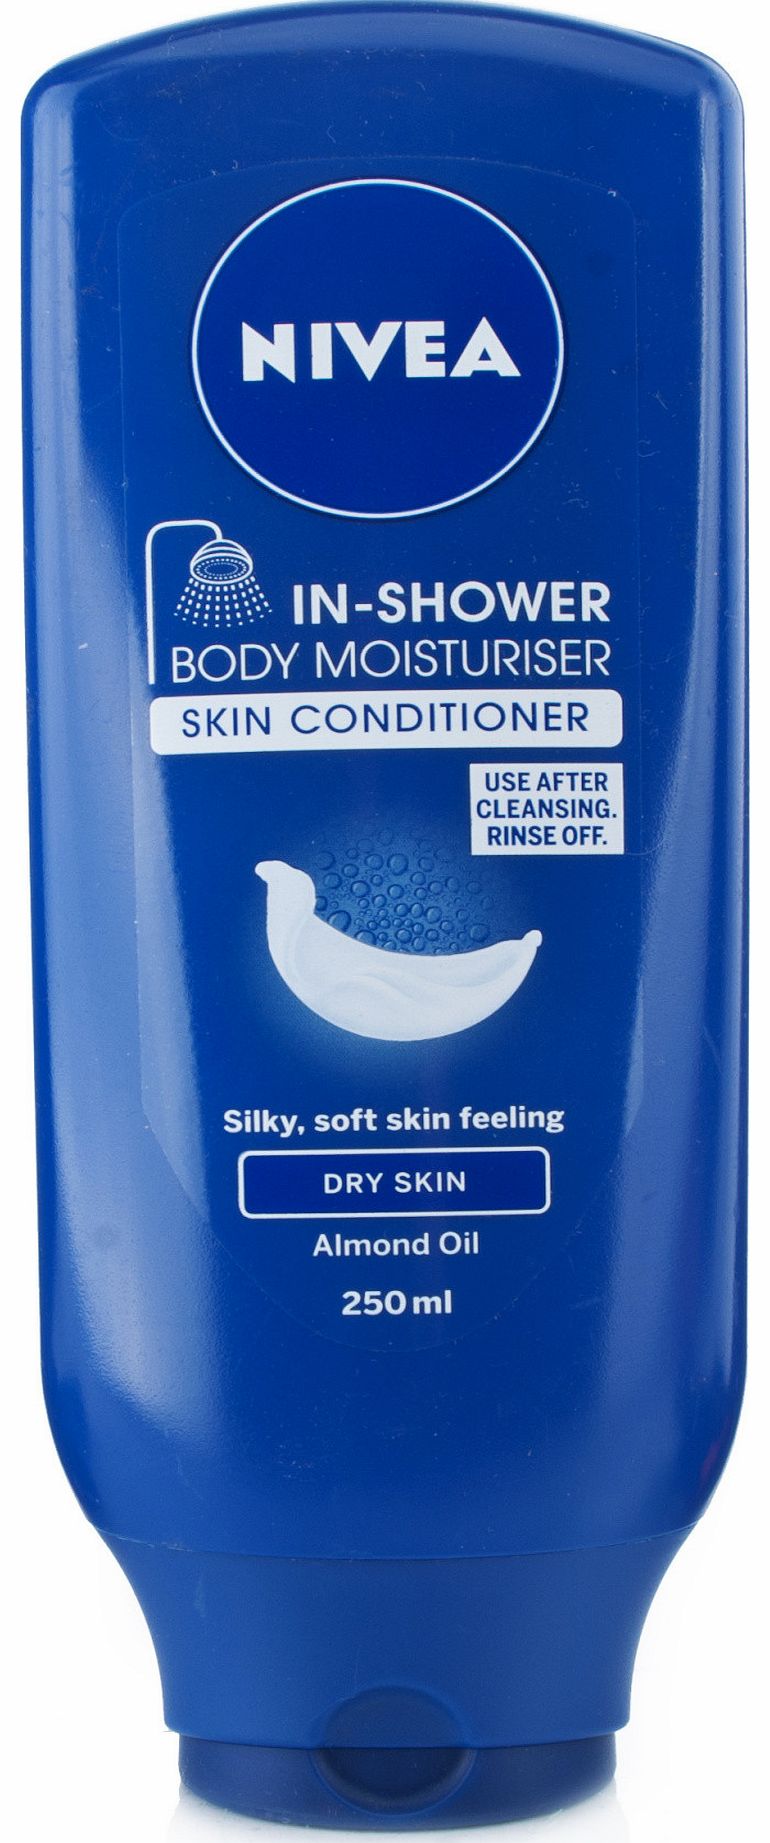 In-Shower Body Moisturiser Dry Skin